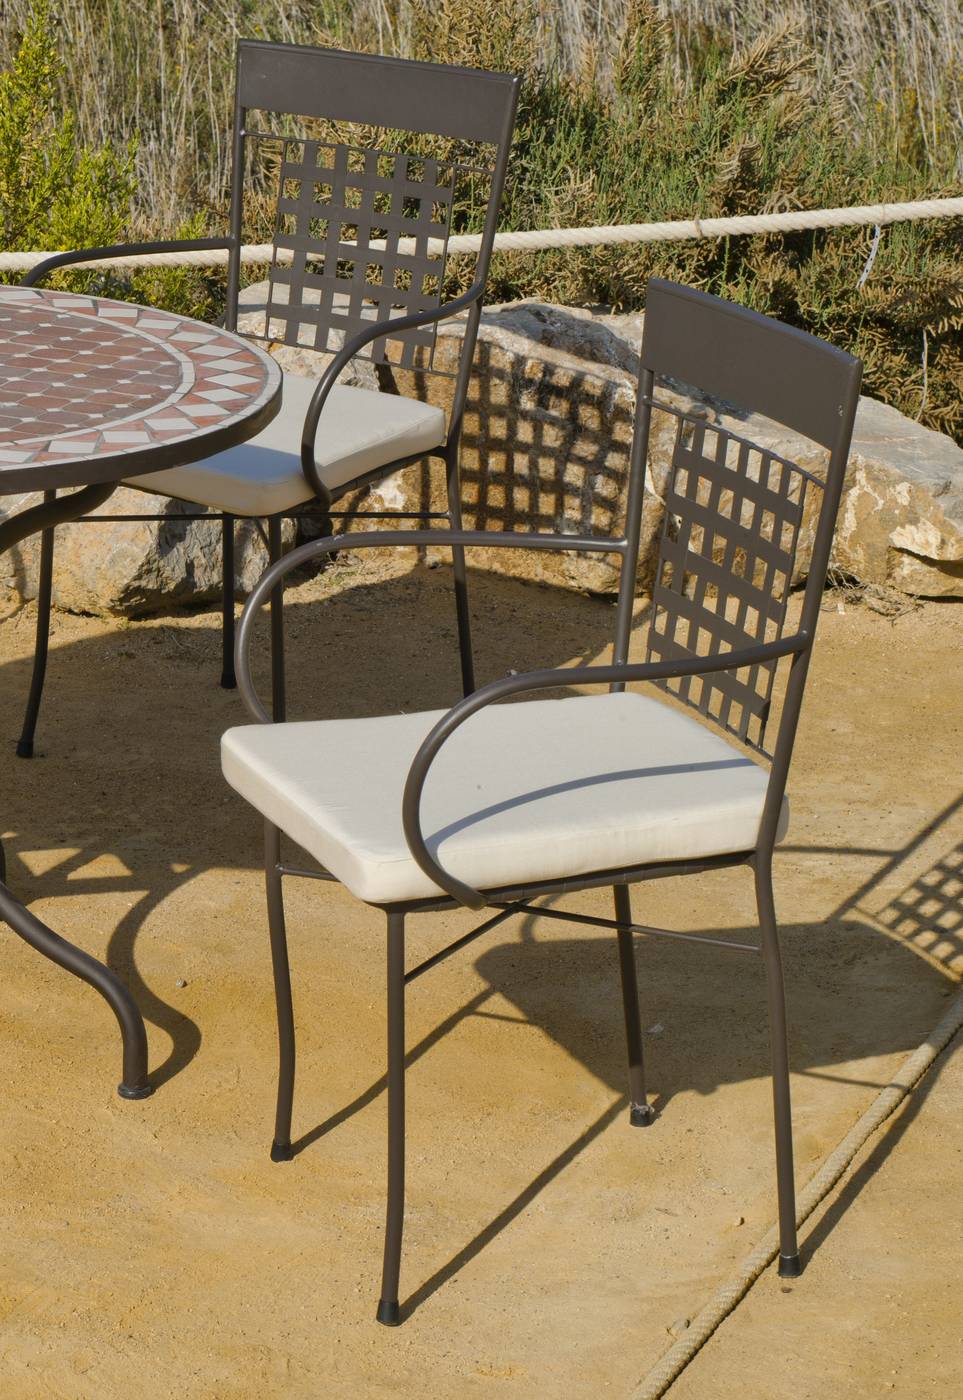 Conjunto Mosaico Priscila-Vigo 90-4 - Conjunto de acero forjado para jardín: 1 mesa con panel mosaico + 4 sillones de forja + 4 cojines